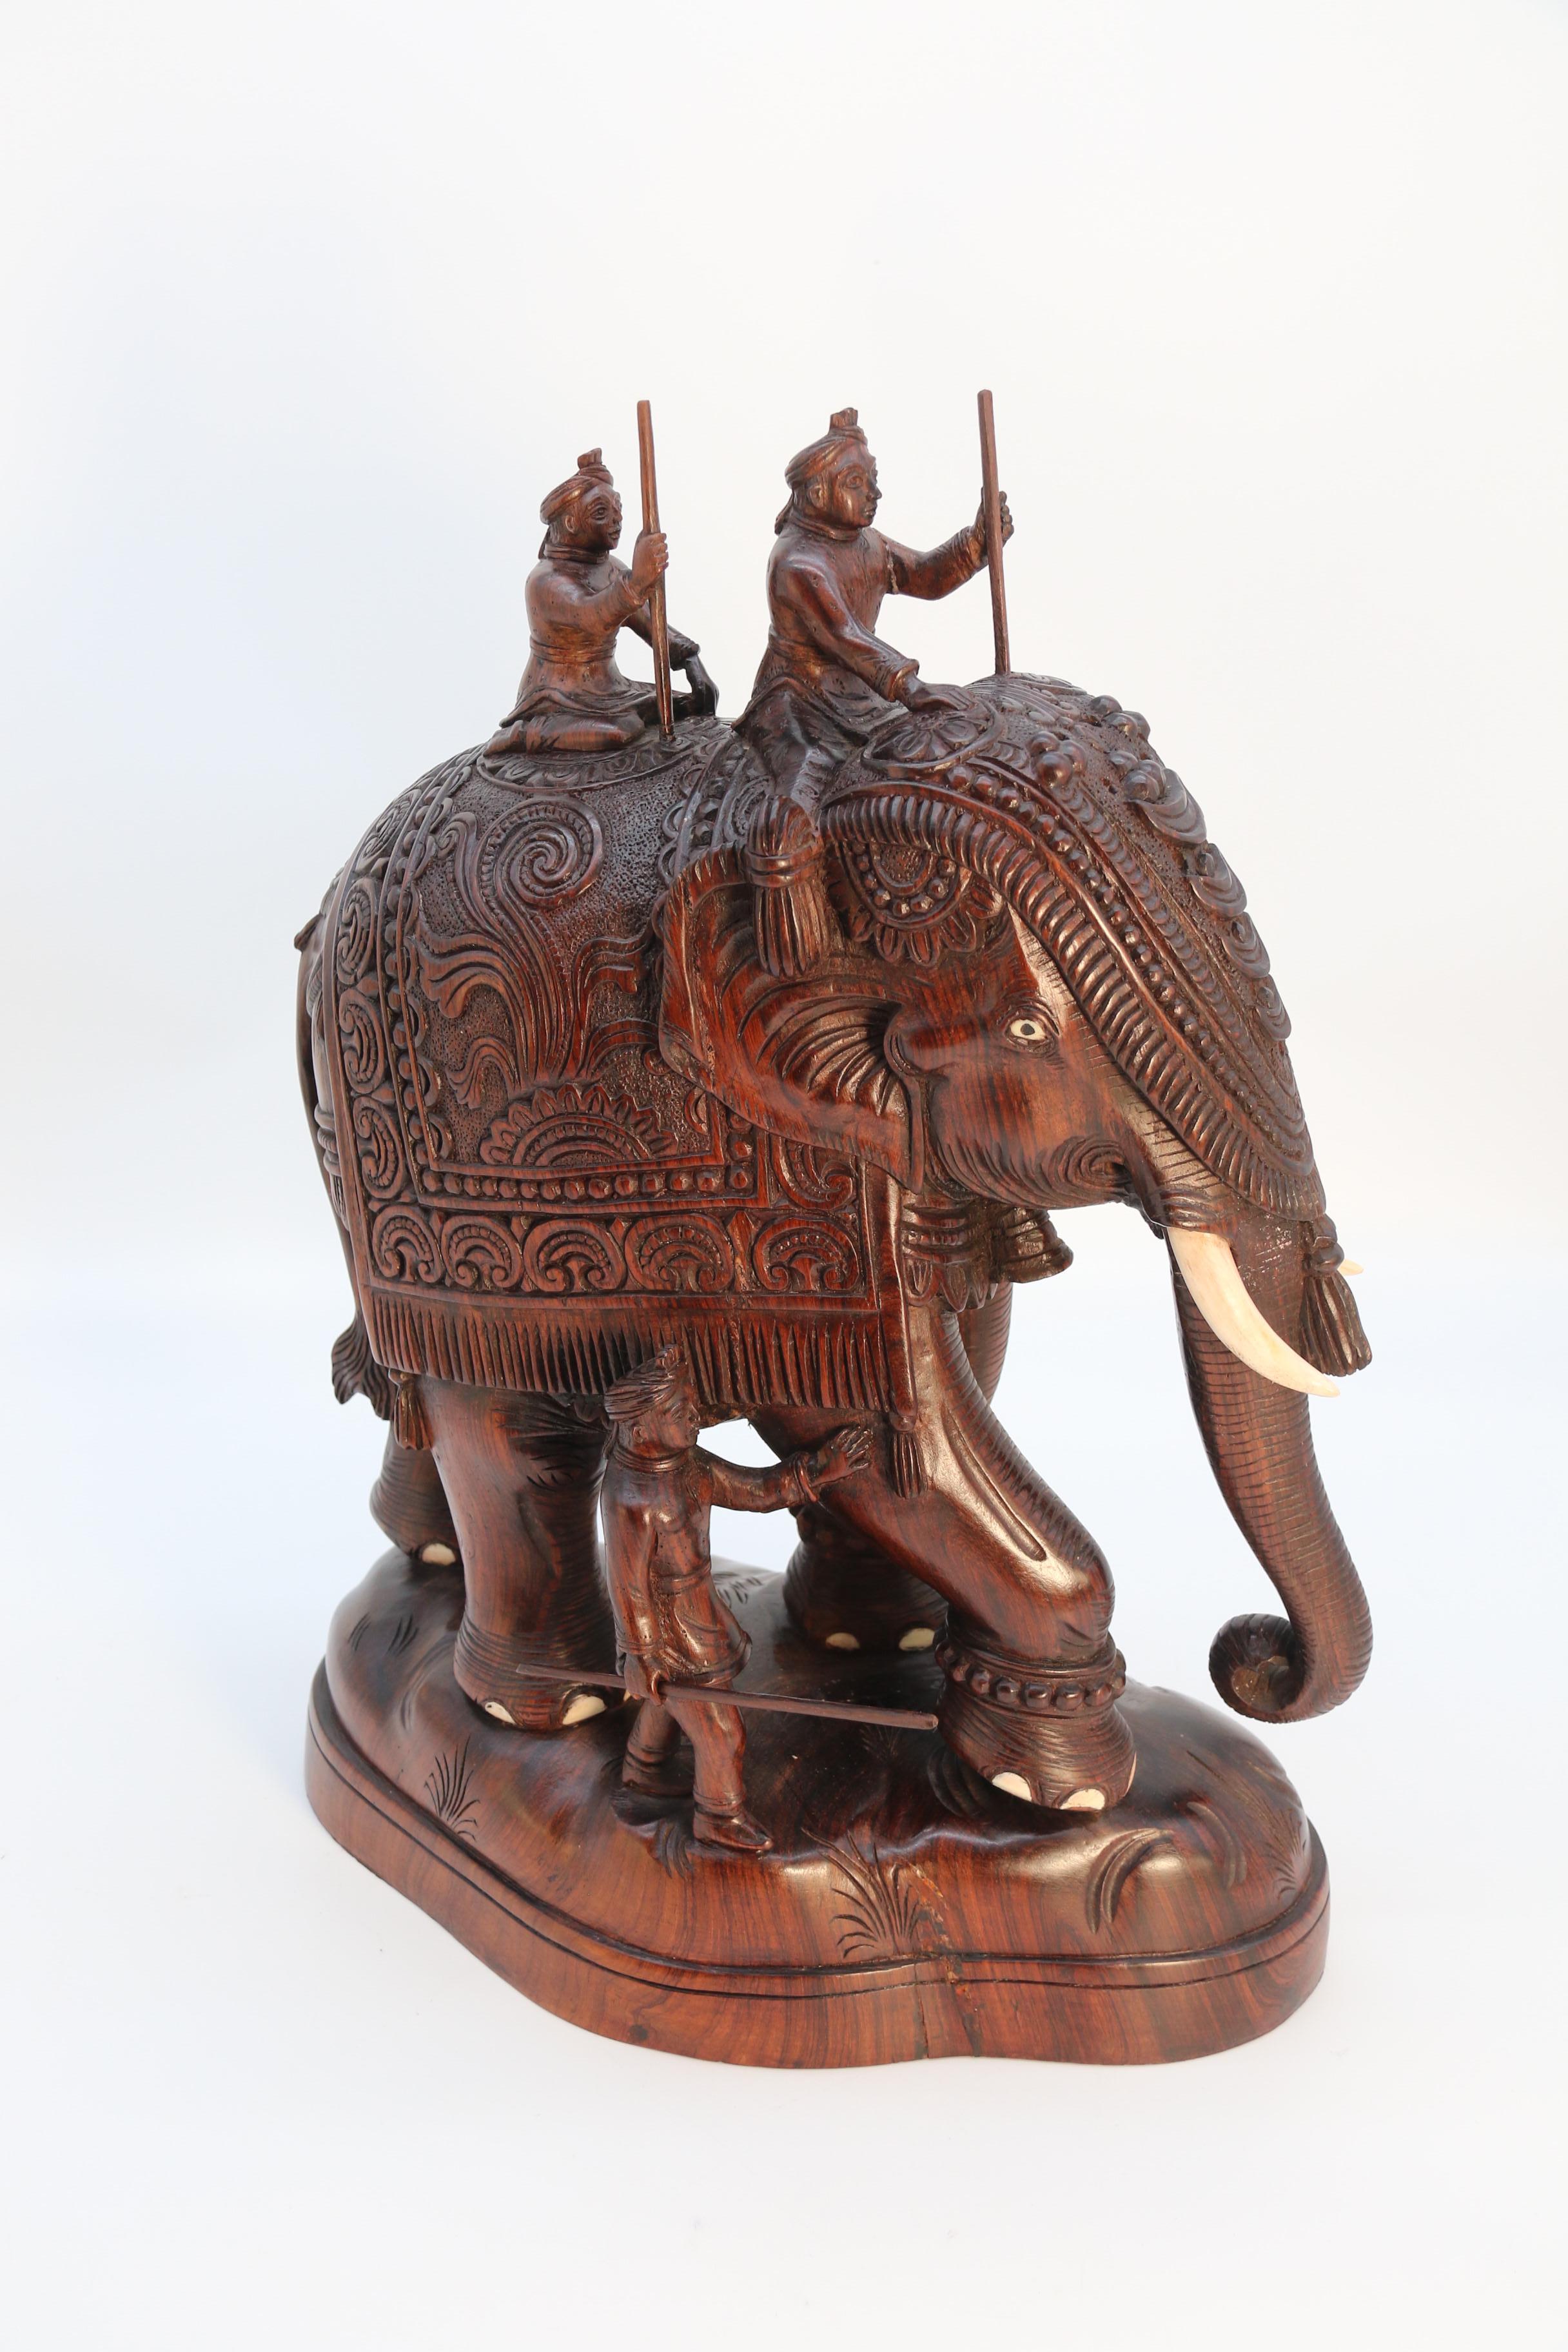 Cette superbe œuvre d'art indienne est finement sculptée à la main dans un seul grand morceau de bois dur riche et dense, bien figuré, et elle est remarquable dans ses détails. Elle représente un très grand éléphant indien enfin vêtu d'une robe de